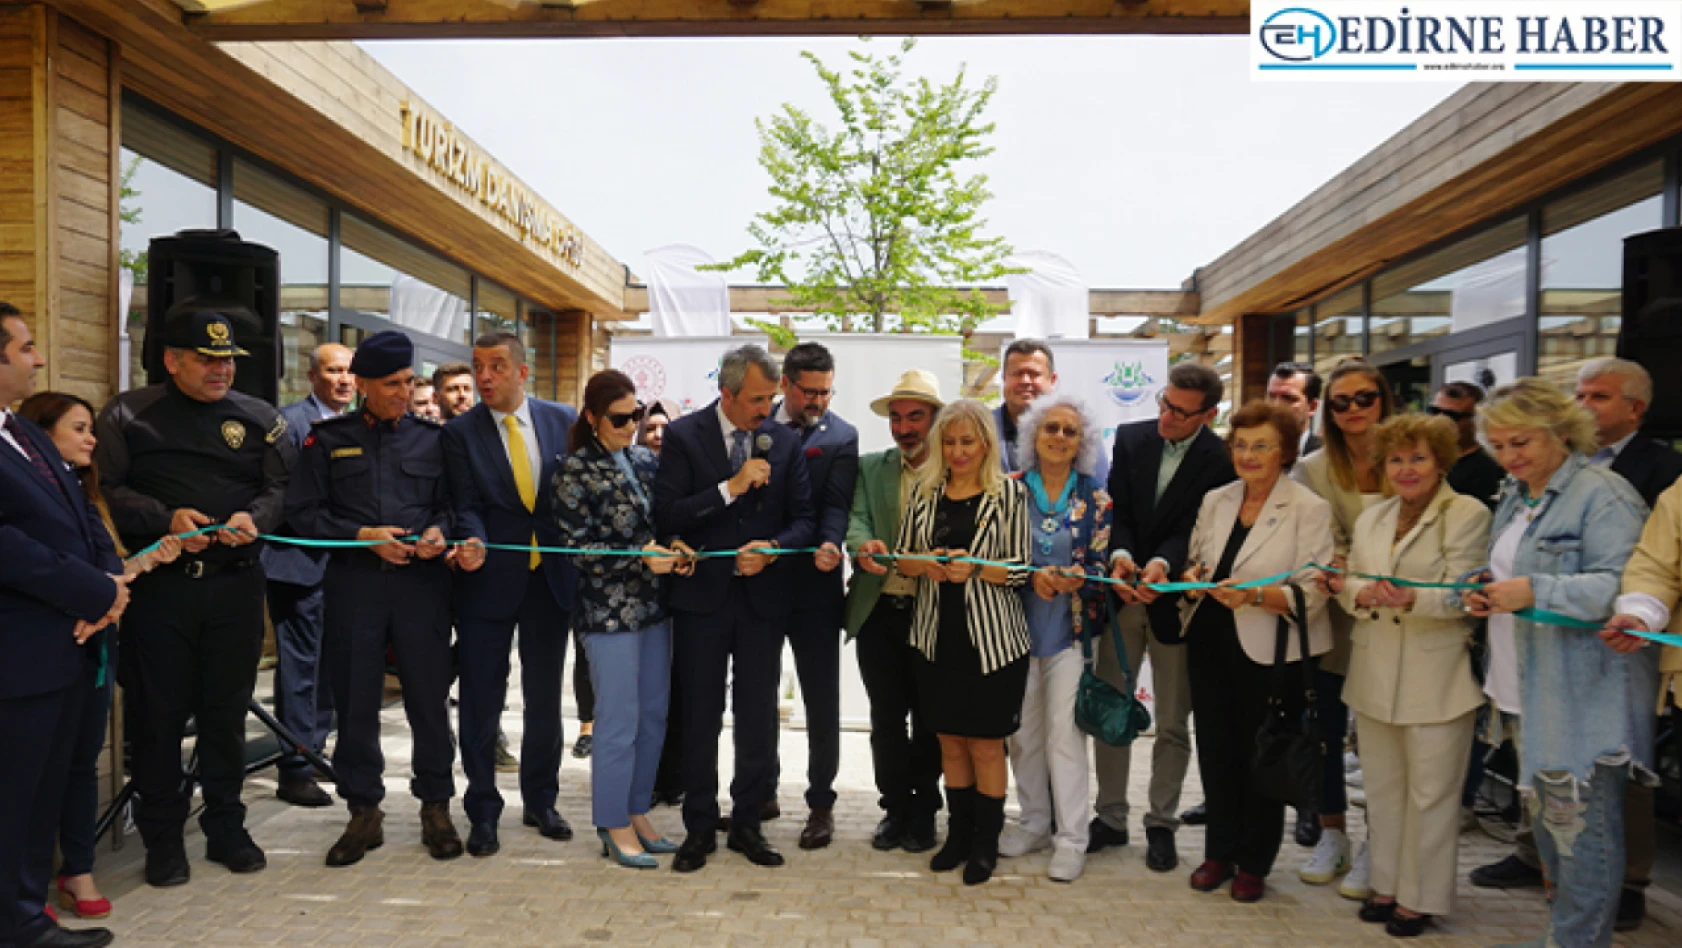 Edirne'de Turizm Danışma Ofisi düzenlenen törenle açıldı